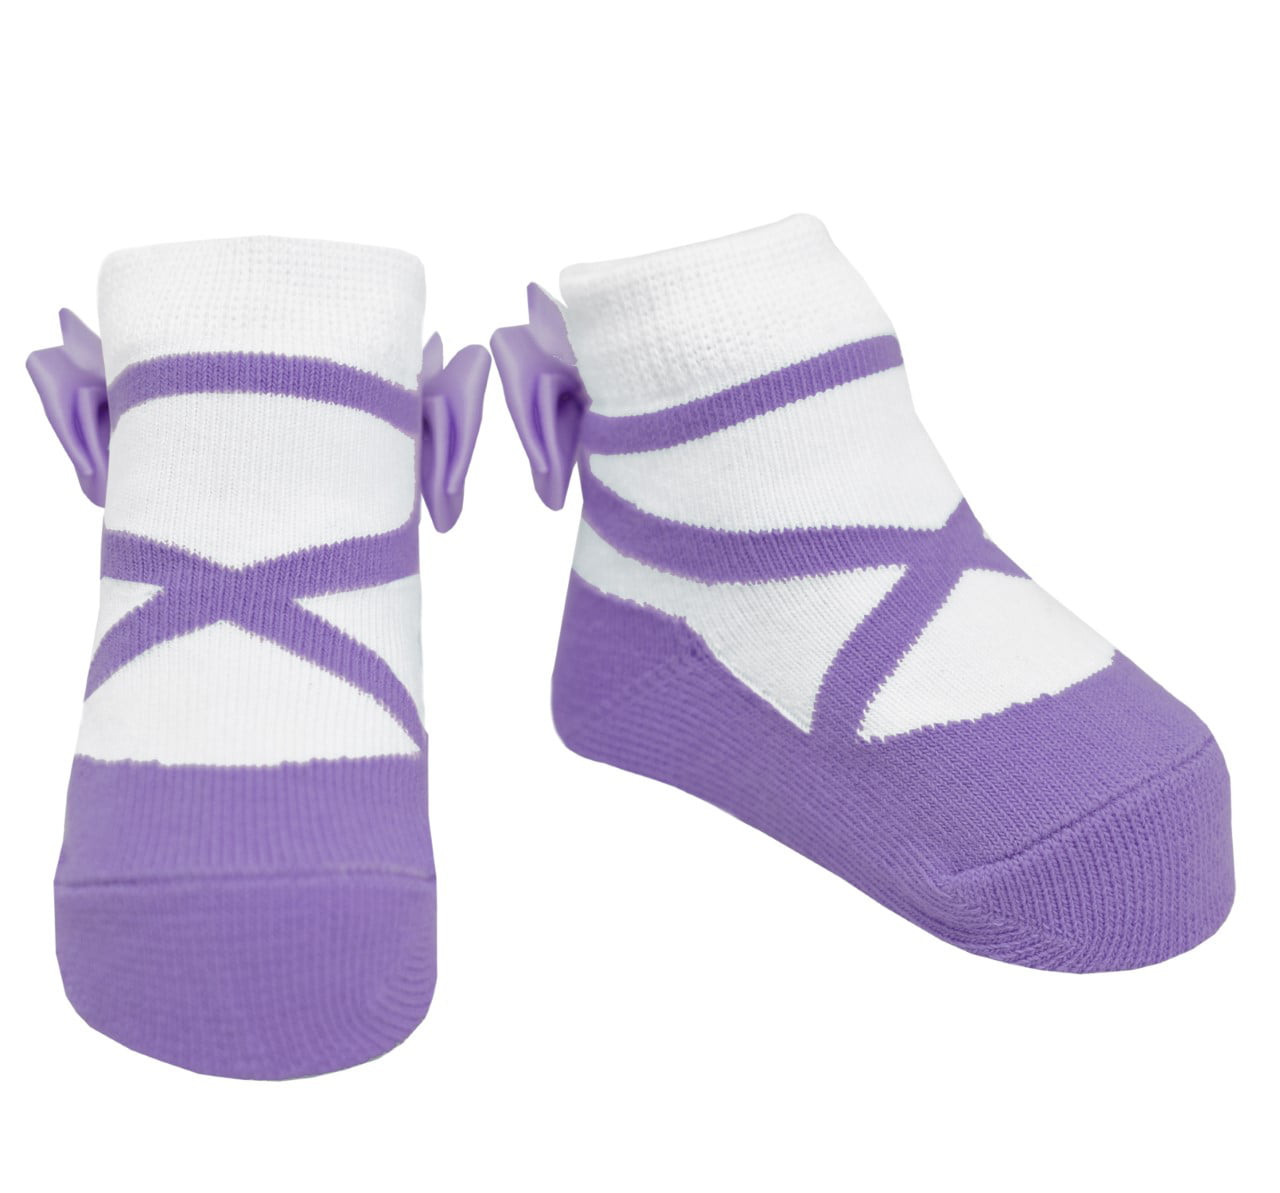 Model:1551 Biotex Organic Baby Girl Newborn Booties Socks0-12 Months|3 Pairs 